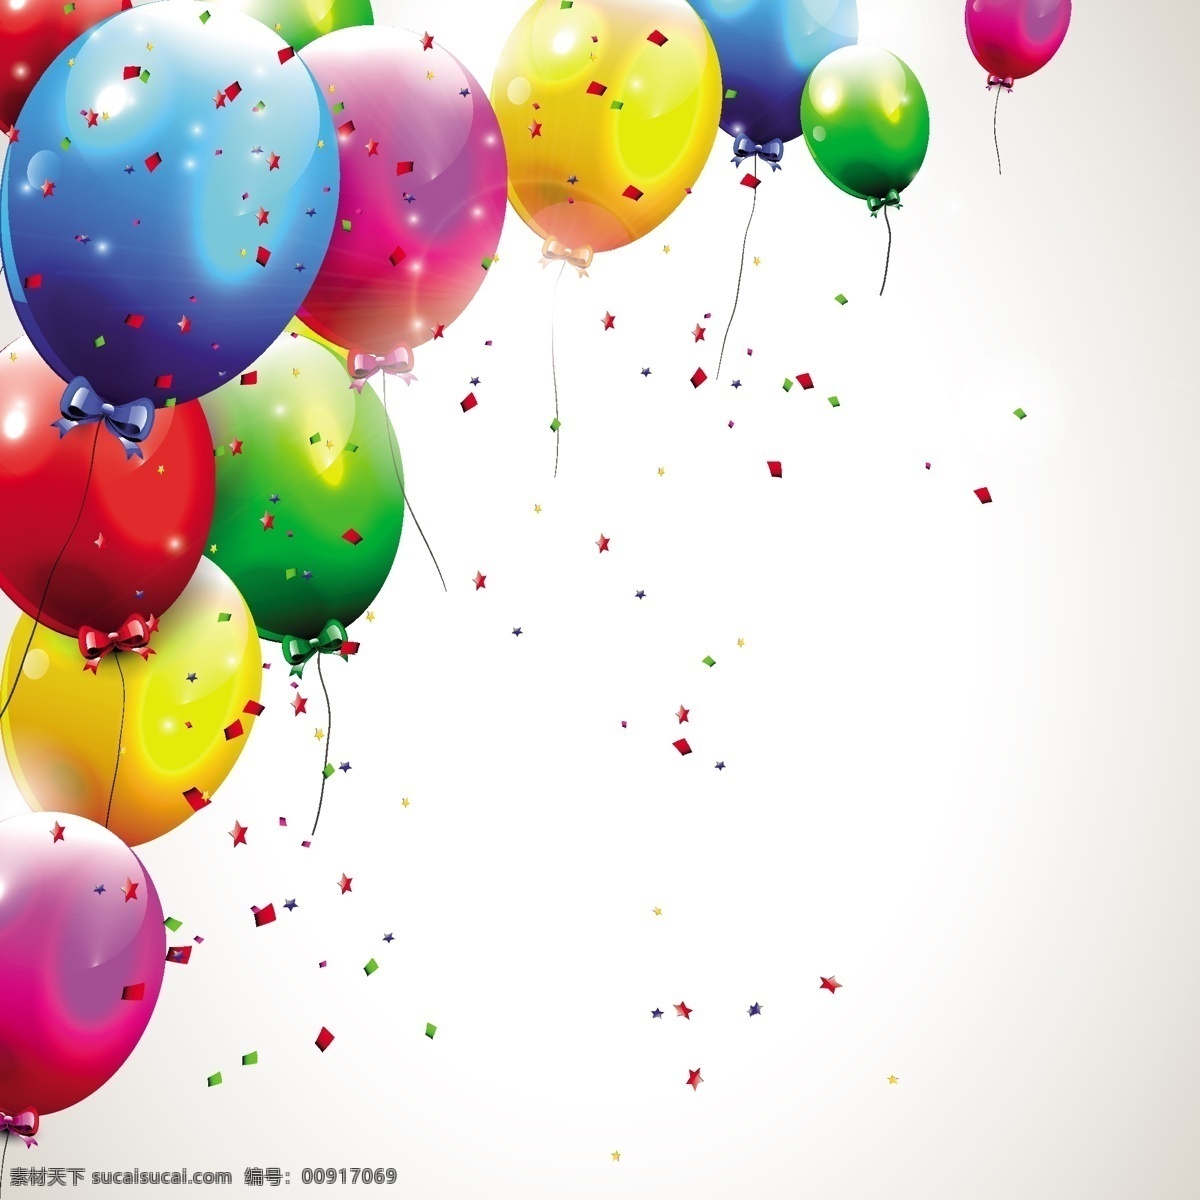 彩色 气球 大图片 合集 礼花 漂亮 色彩 五颜六色 适量气球 压缩包 各种造型 矢量图